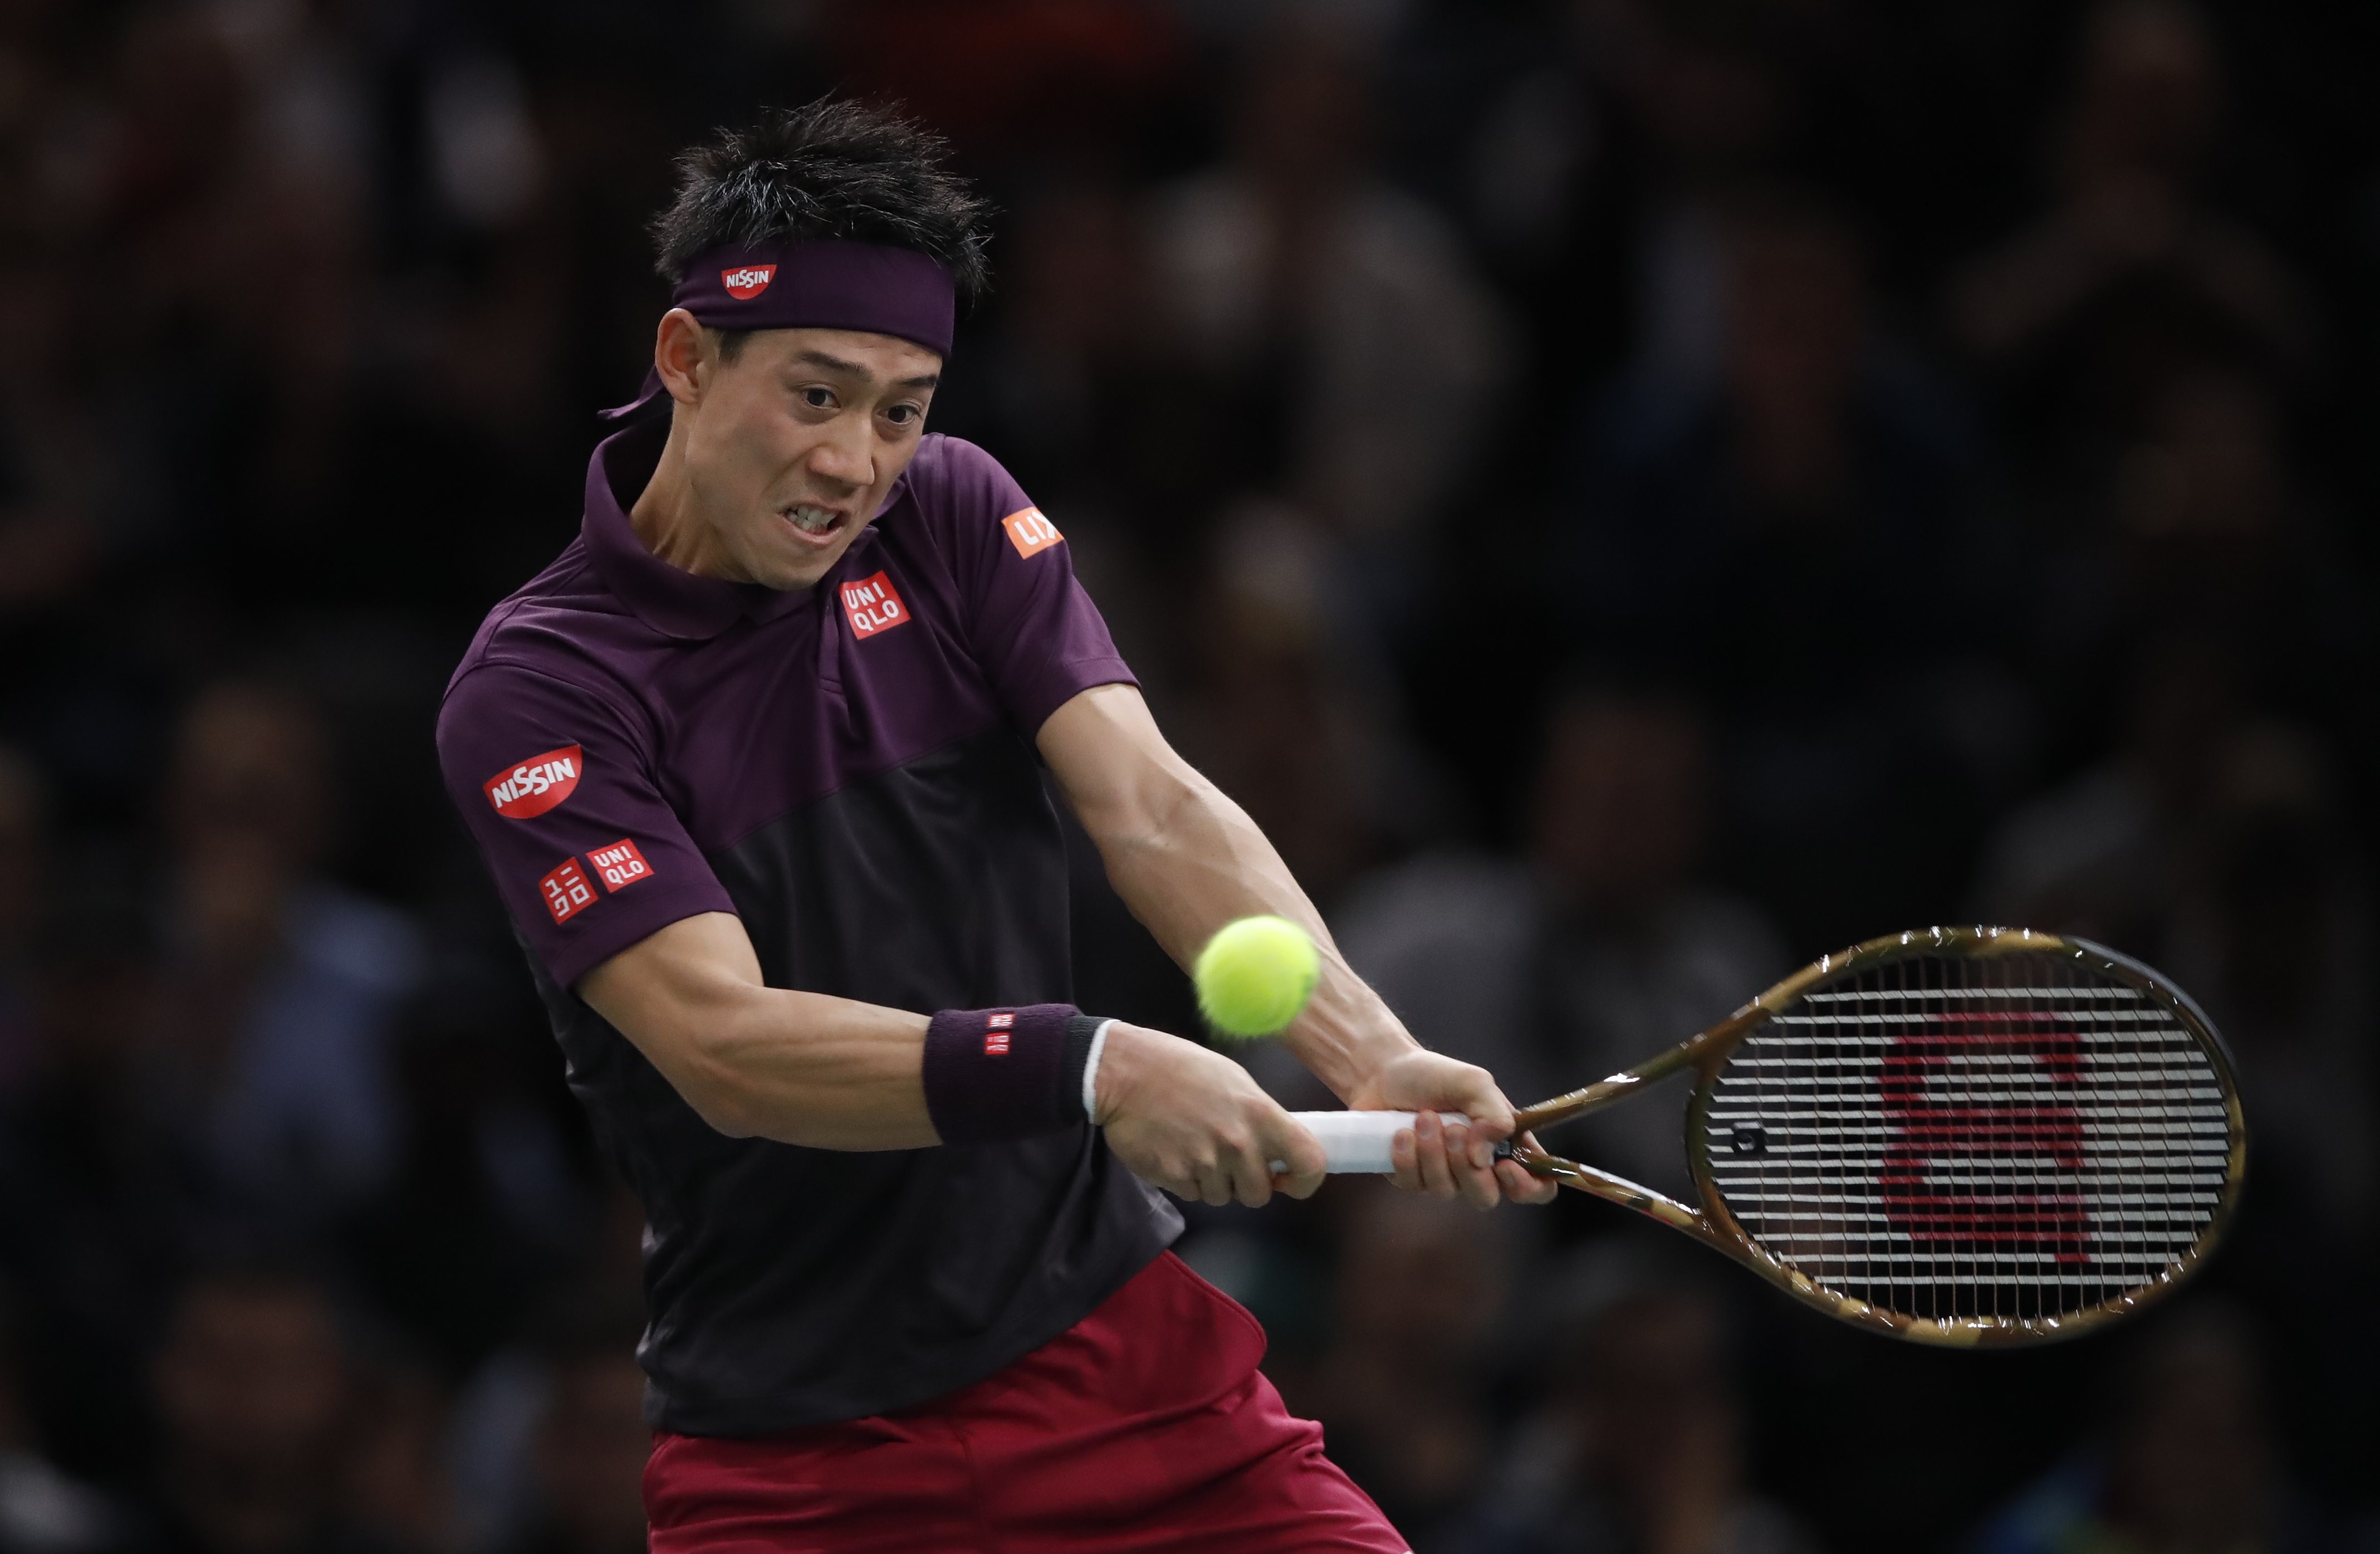 Tennis: Nishikori to replace Del Potro at ATP Finals